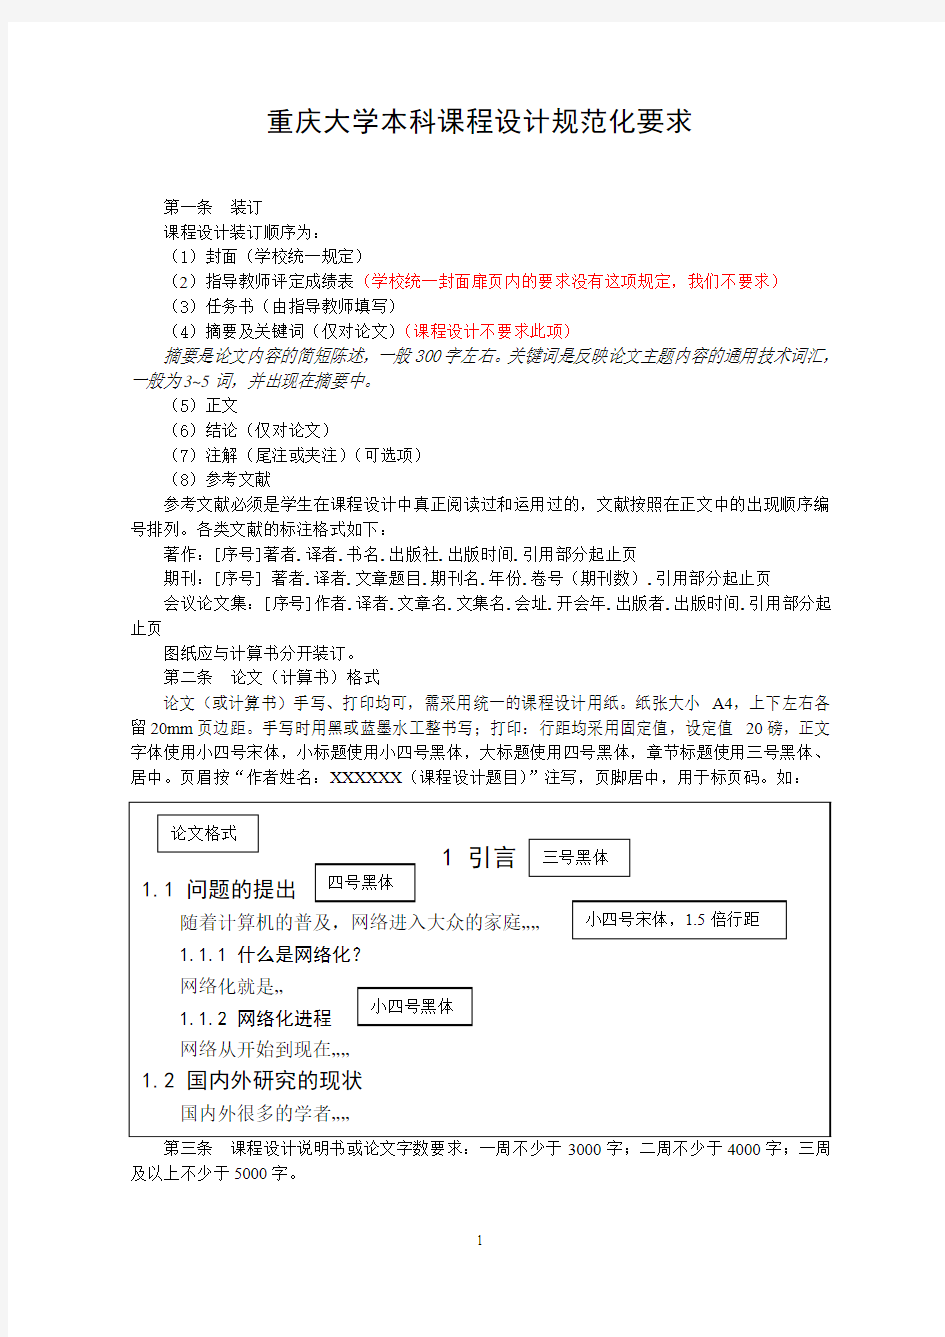 重庆大学课程设计规范化要求